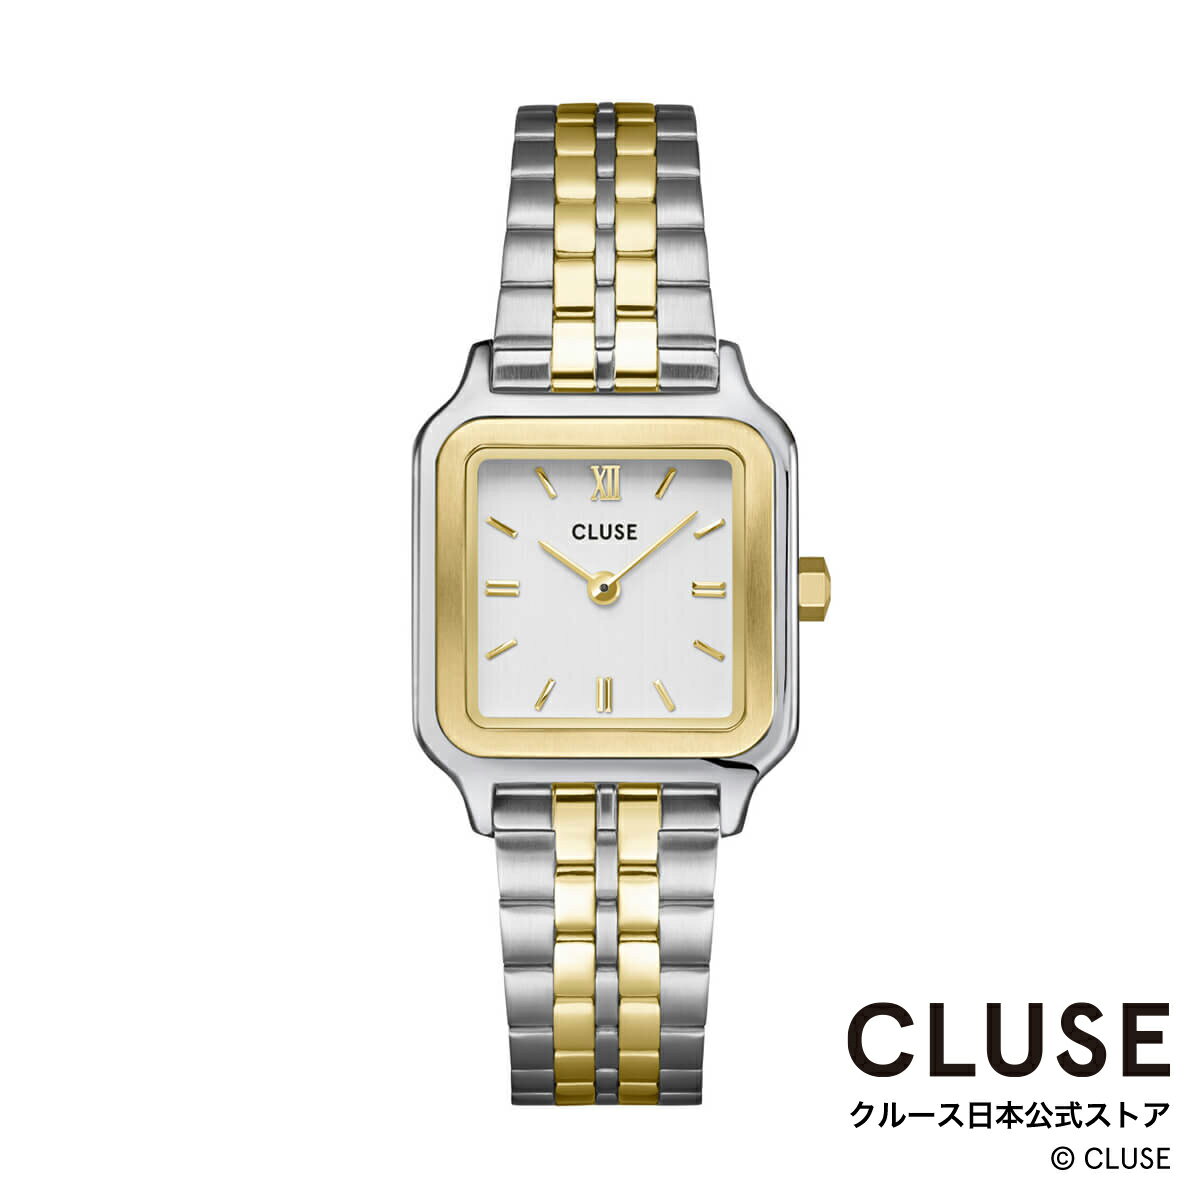 クルース ビジネス腕時計 レディース クルース CLUSE 日本公式ストア グラシューズ ペティット スティール ゴールド シルバー レディース 女性 腕時計 時計 防水 クォーツ